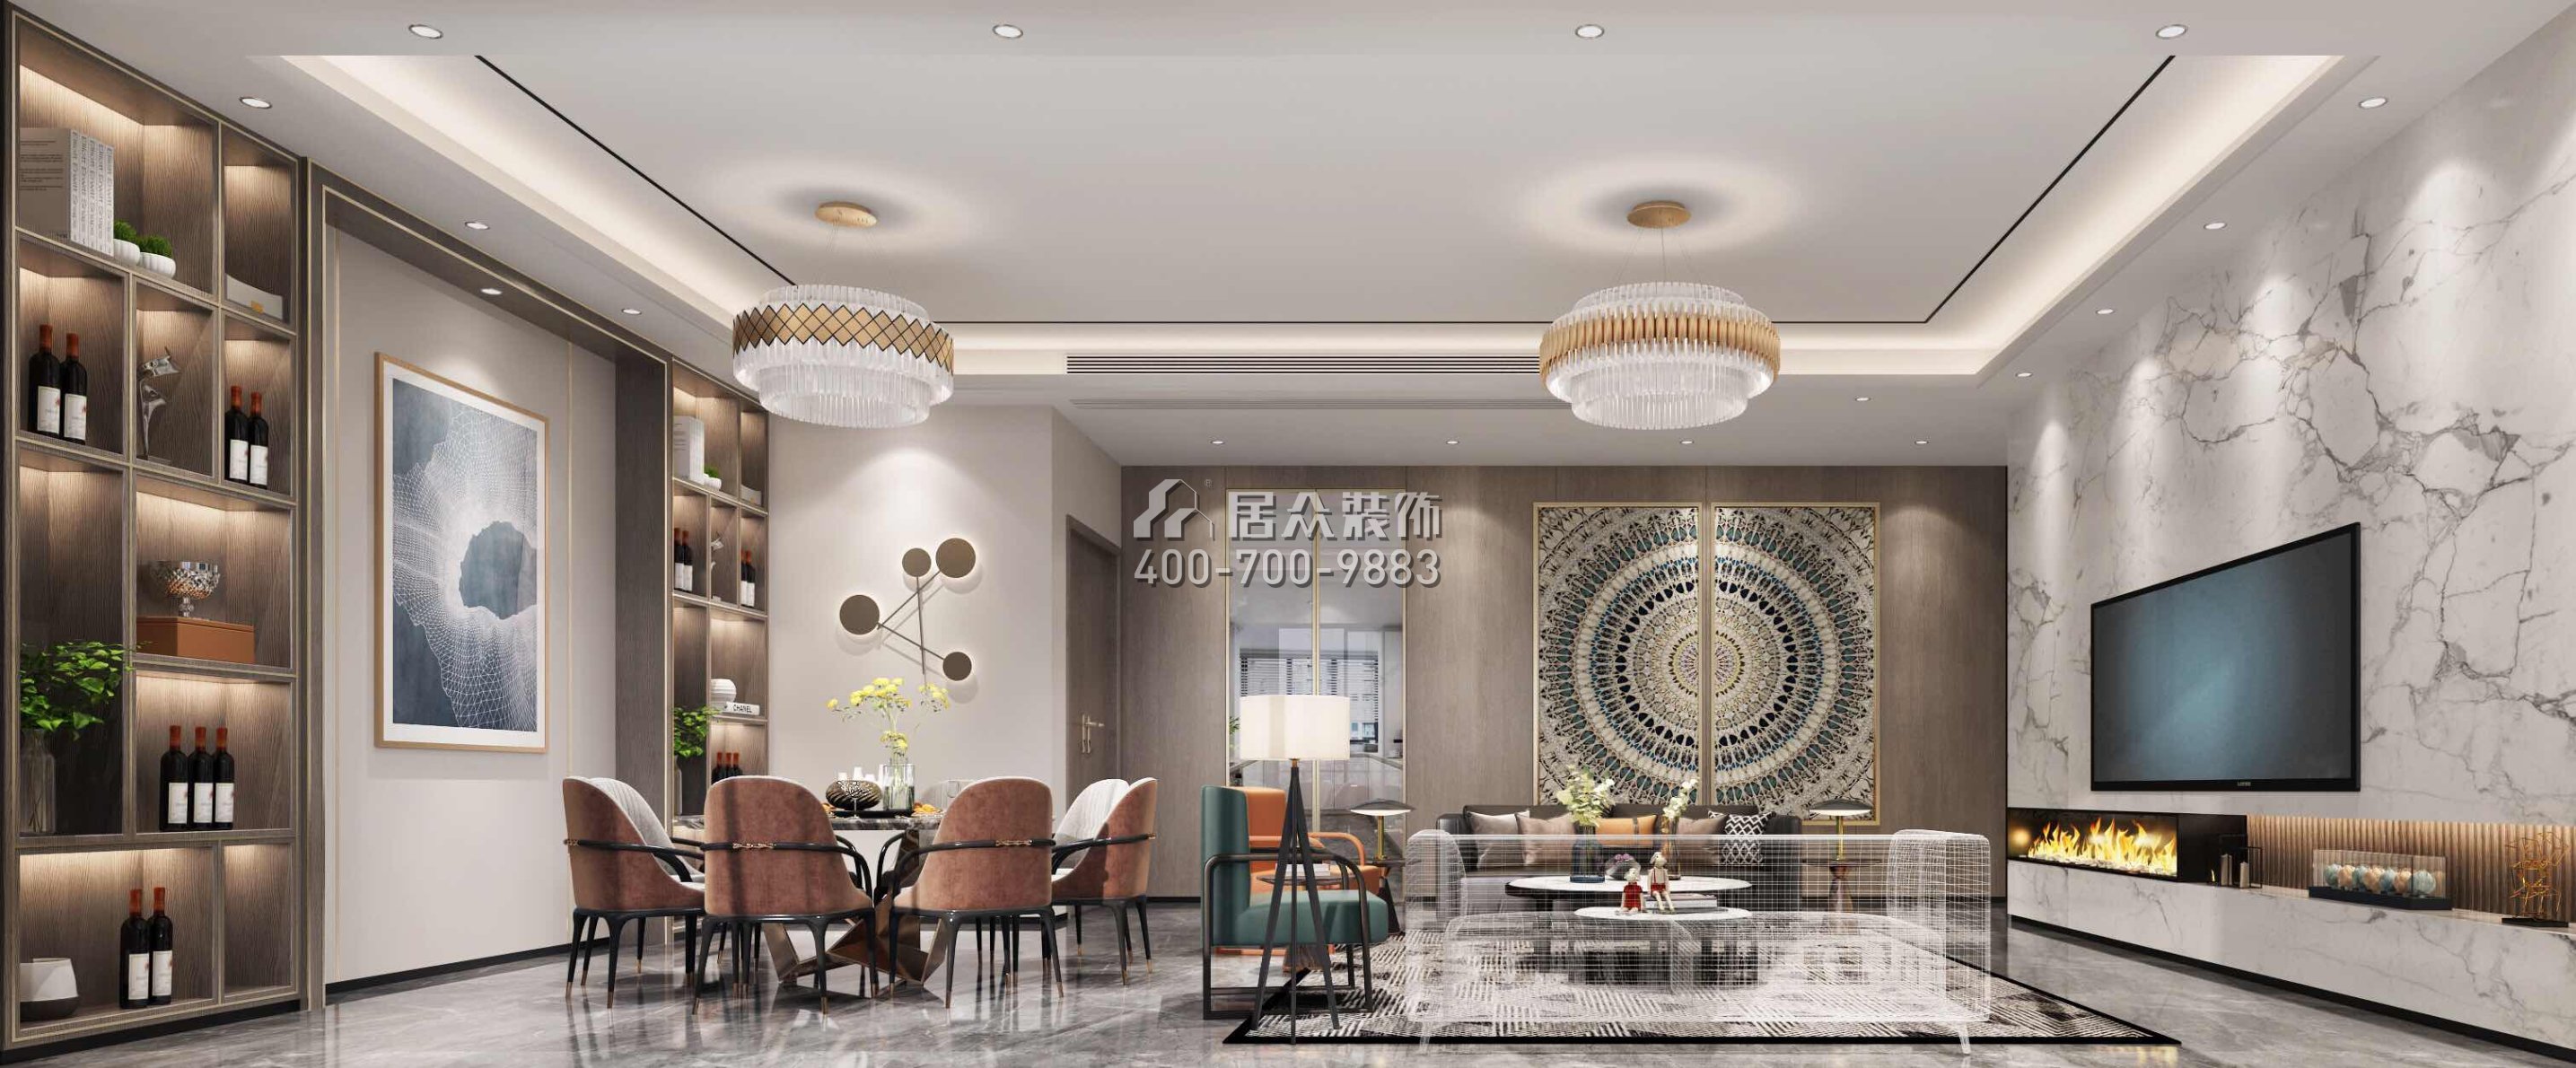 万科皇马郦宫241平方米现代简约风格平层户型客餐厅一体装修效果图